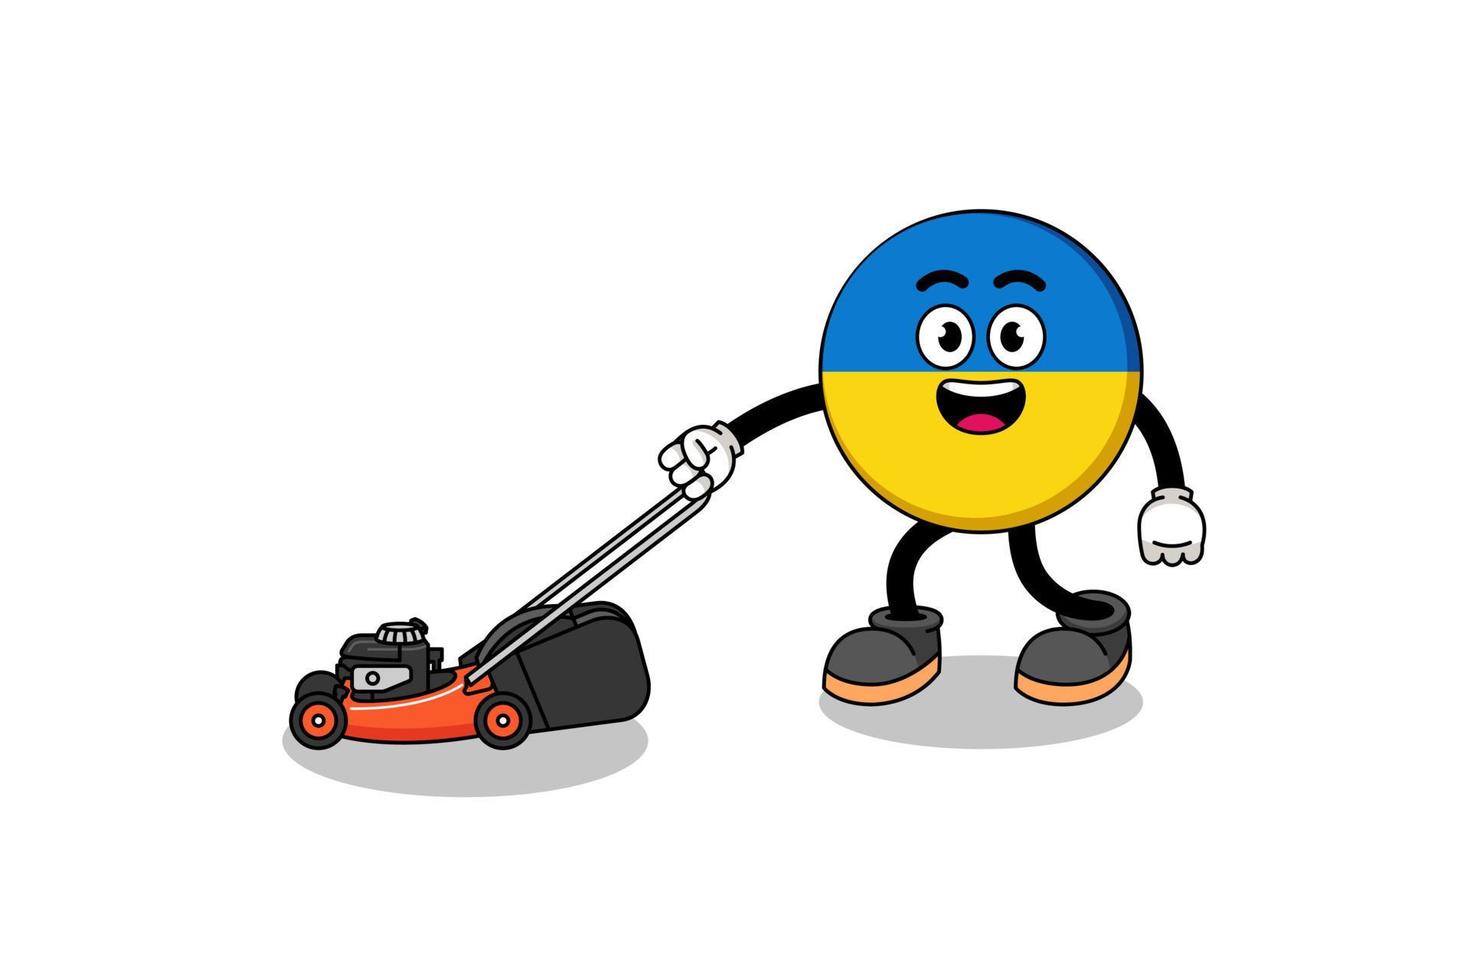 ukrainska flaggan illustration tecknad håller gräsklippare vektor